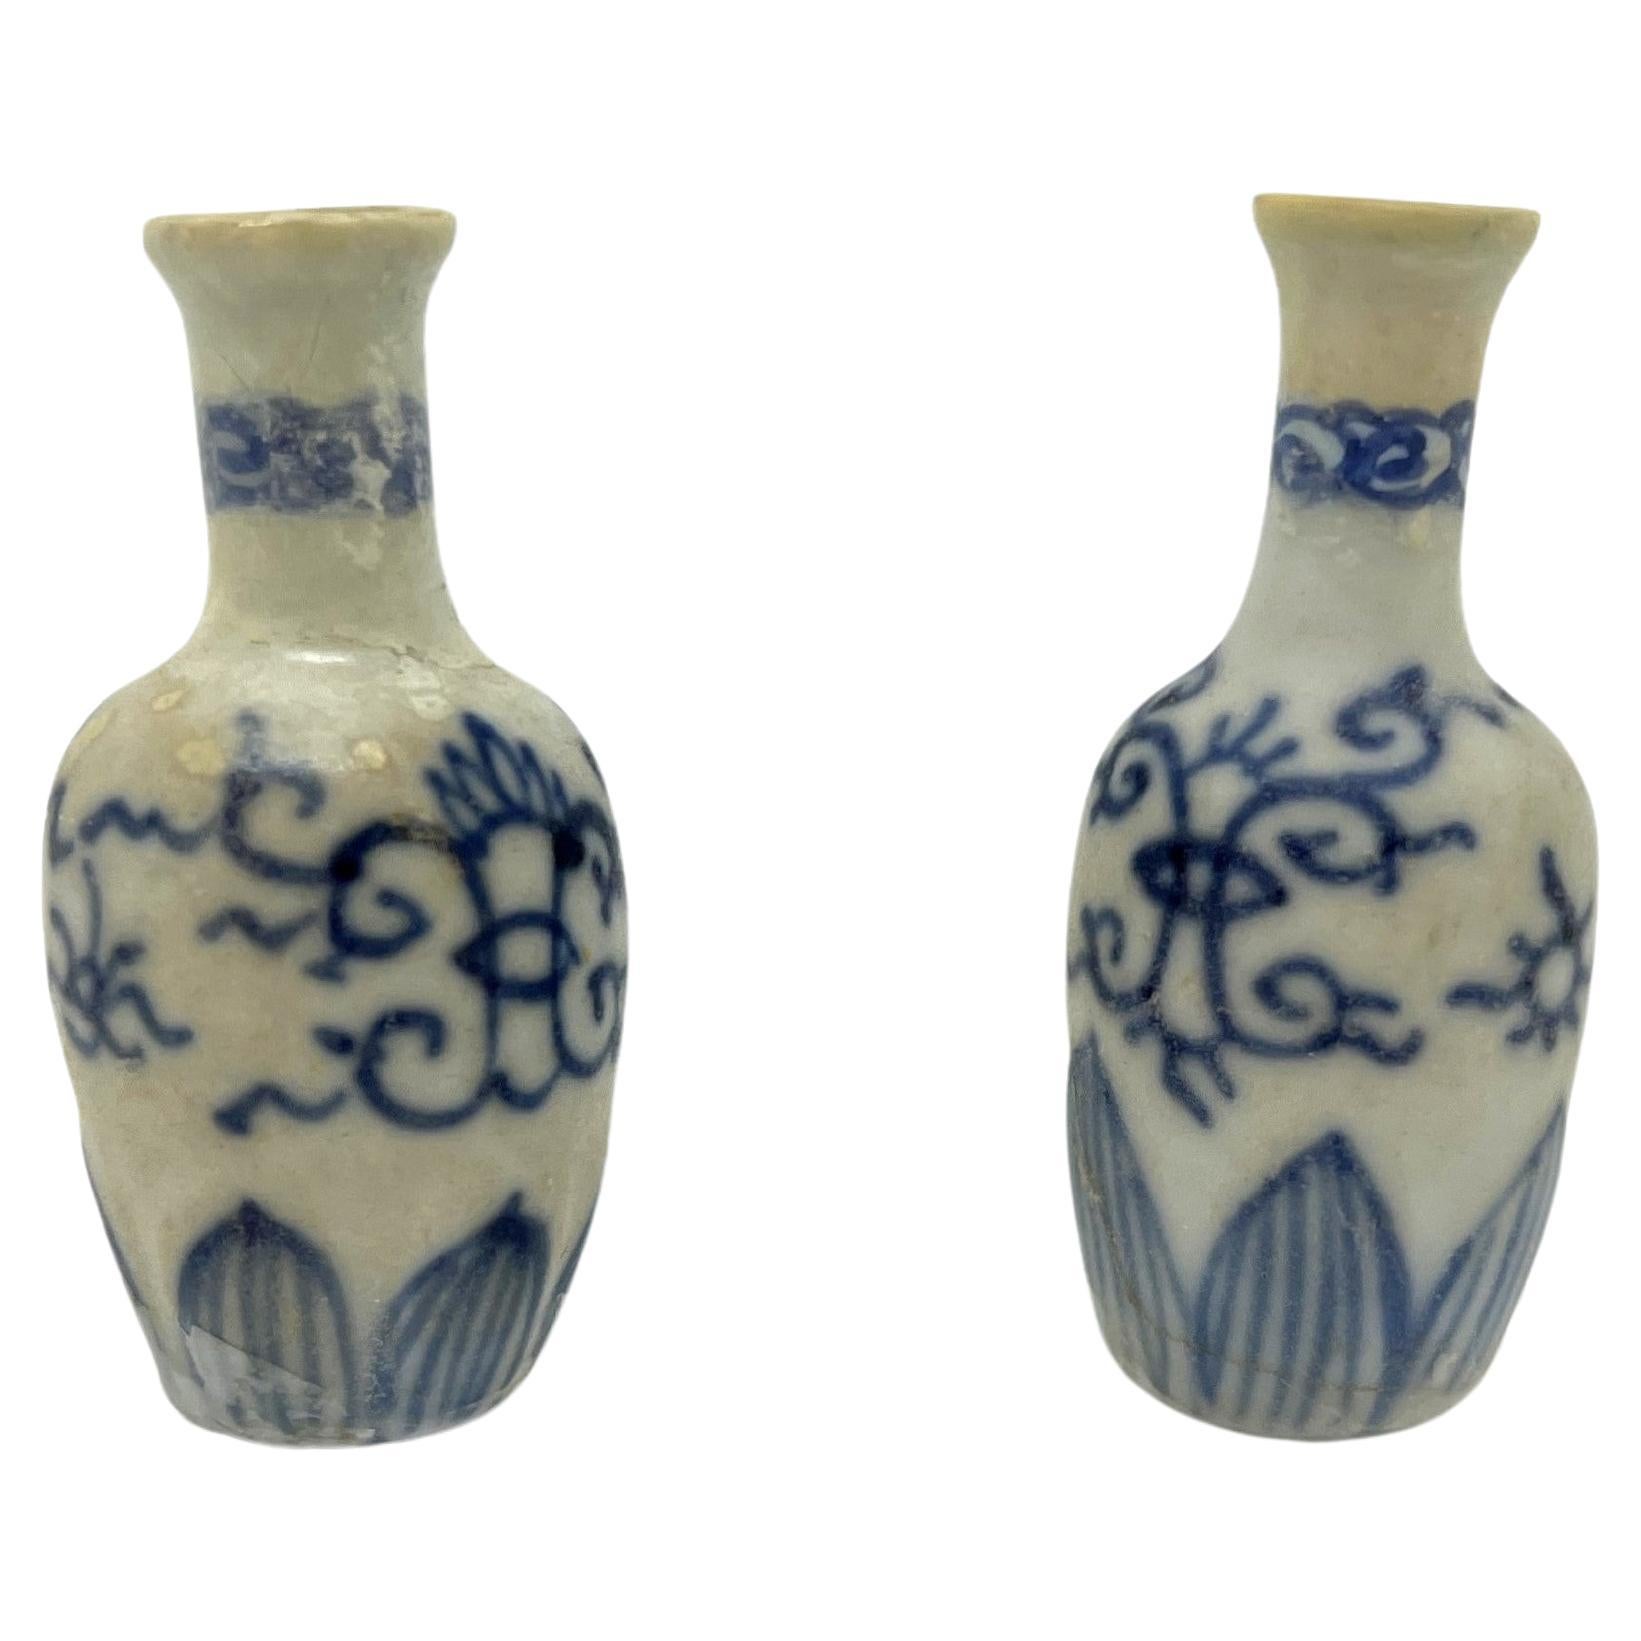 Deux vases miniatures bleu et blanc, A.I.C. 1725, Dynastie Qing, époque Yongzheng